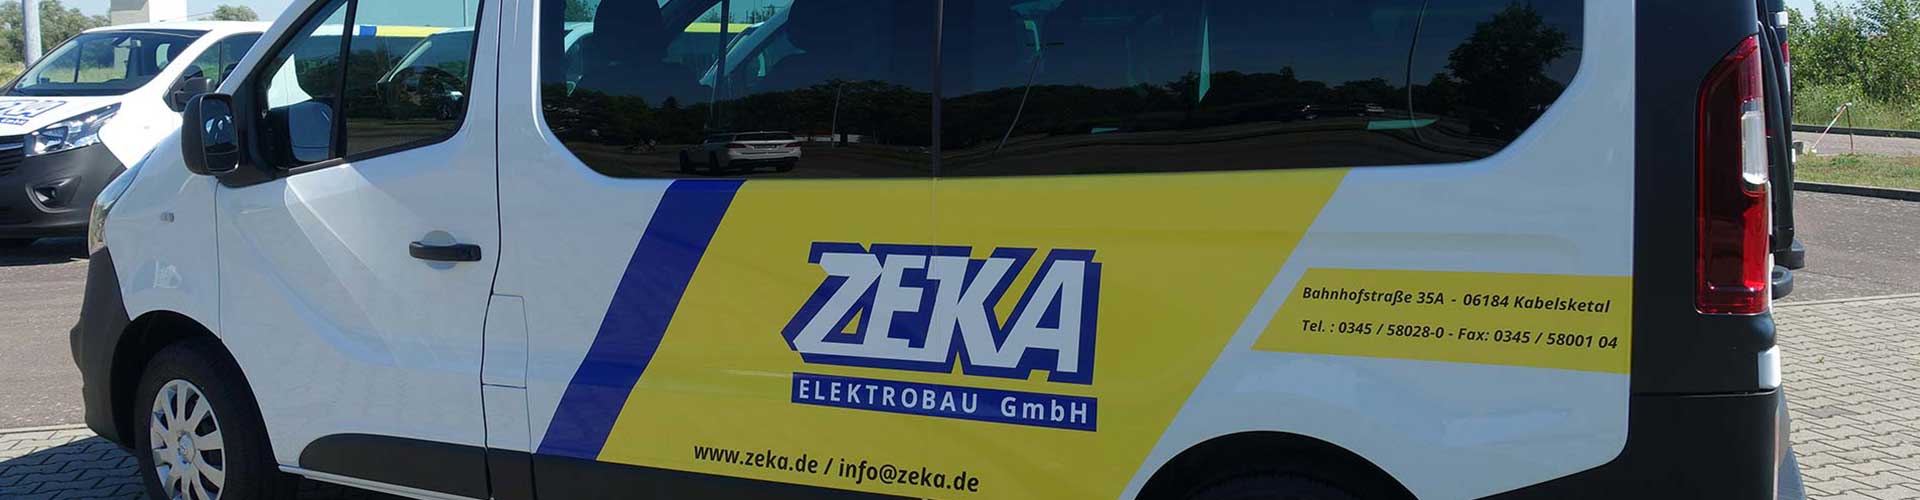 Fahrzeug mit ZEKA-Logo